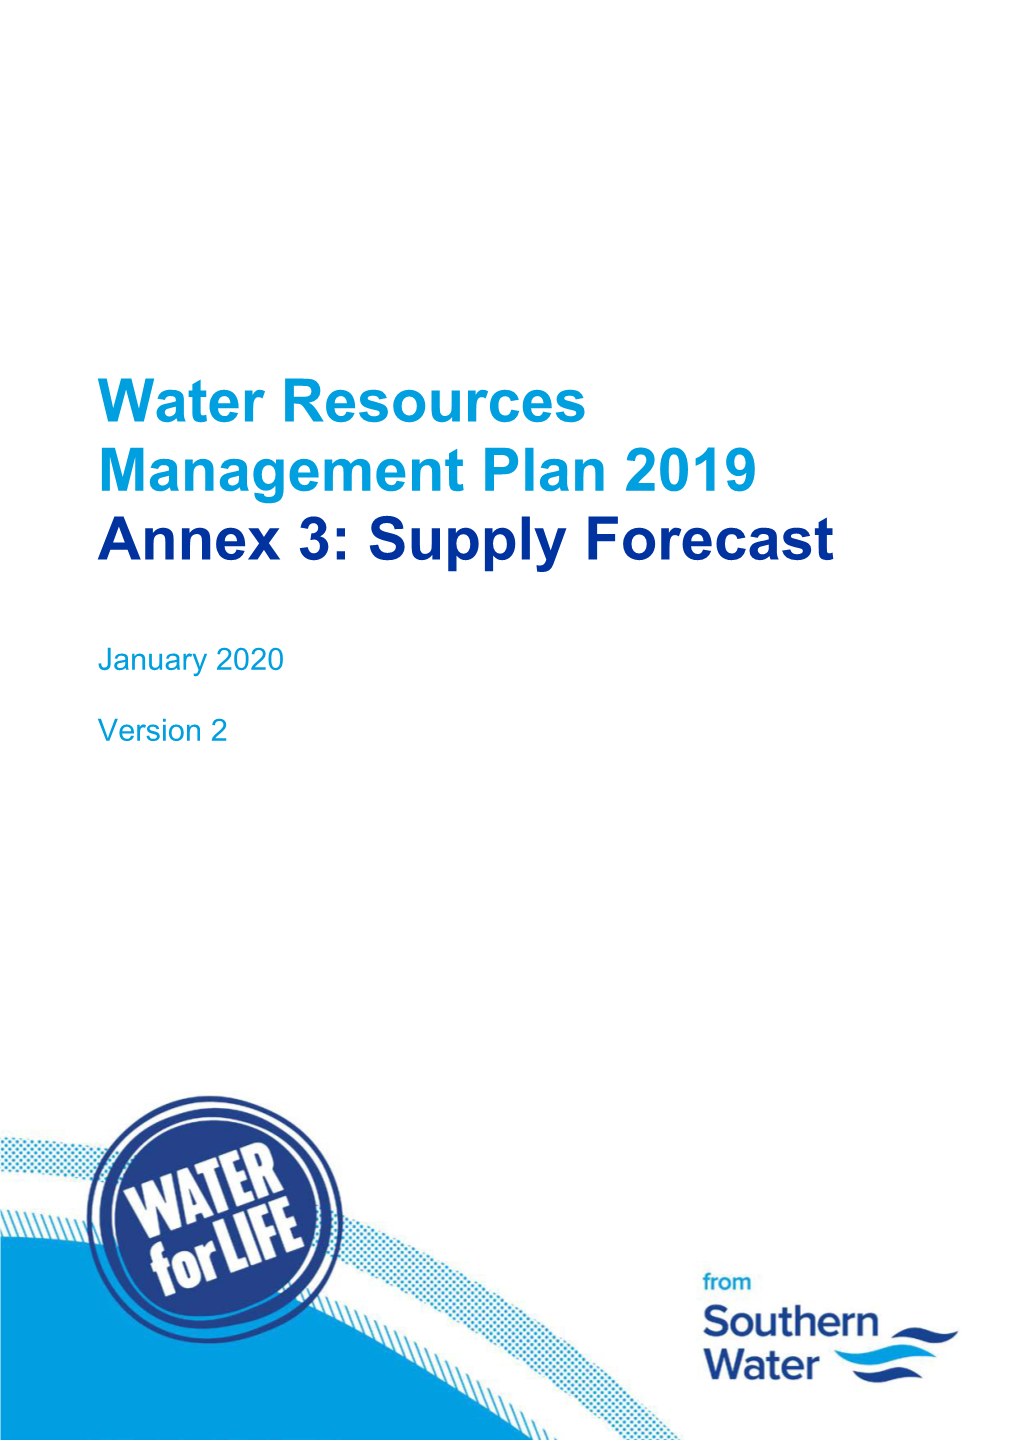 Annex 3: Supply Forecast